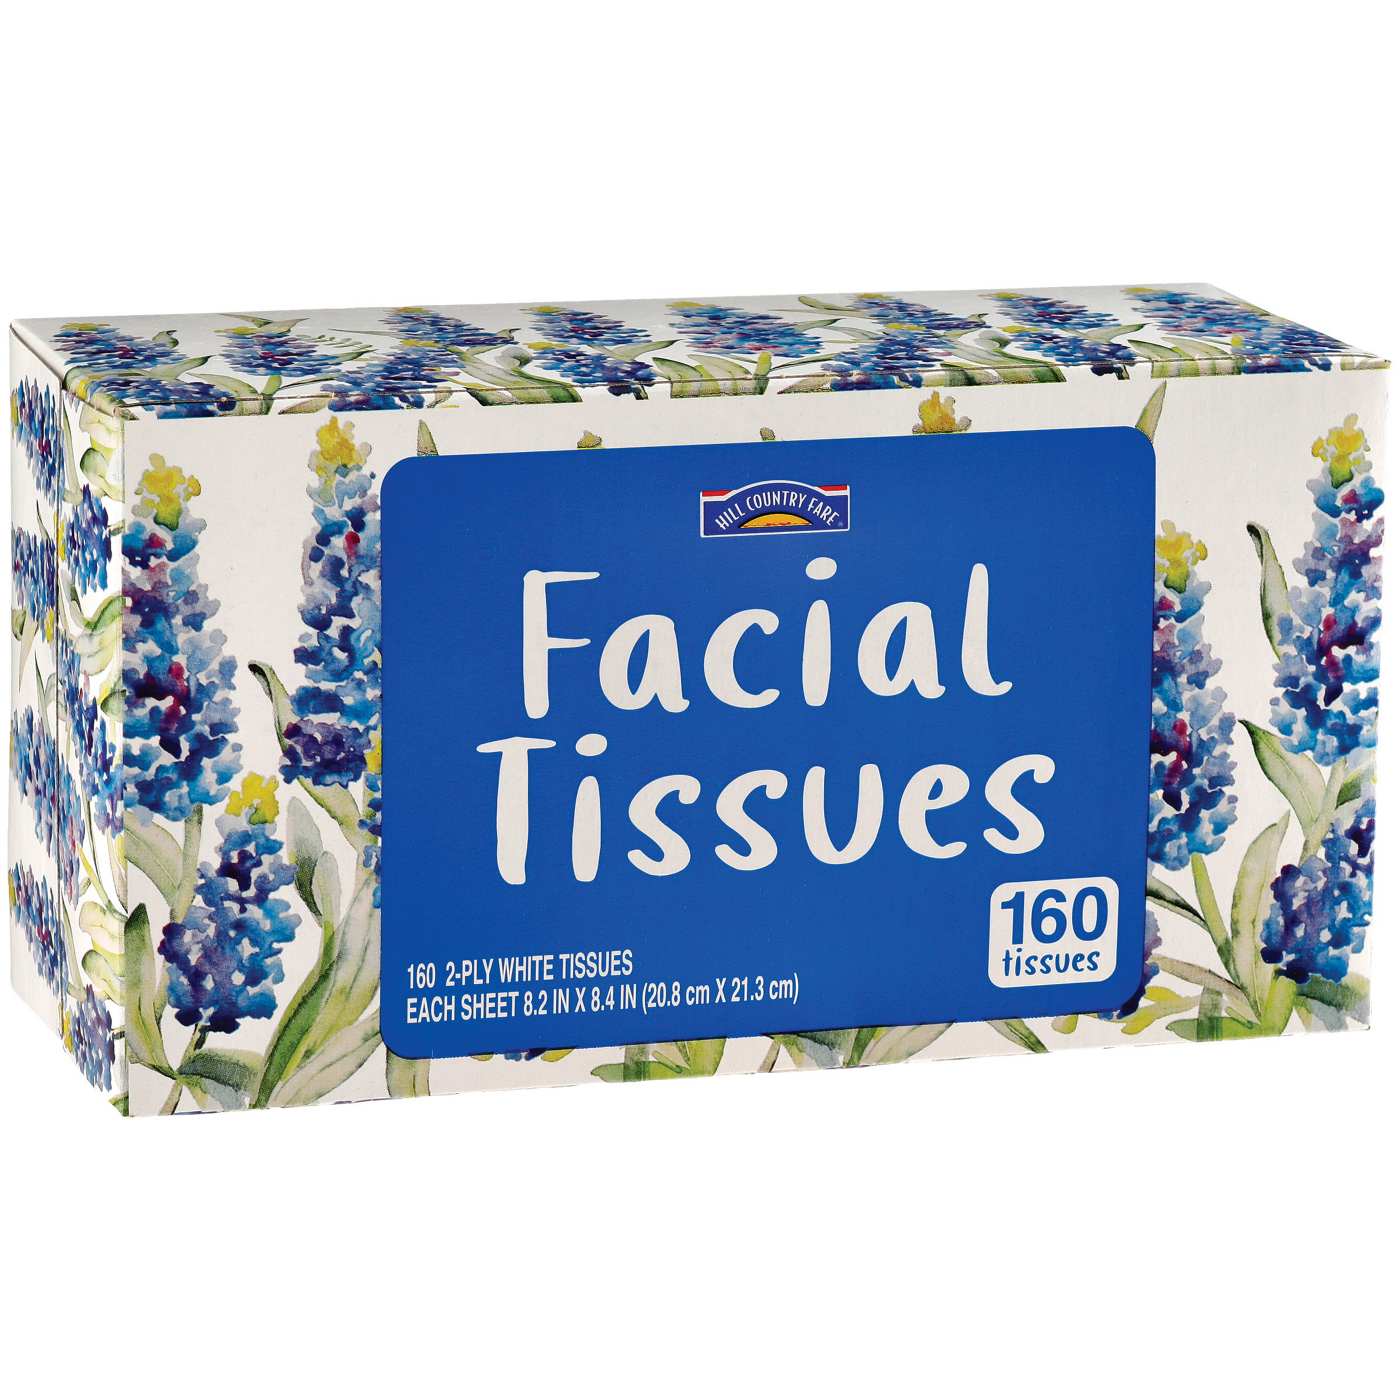 Hill Country Fare Facial Tissues - Shop Facial Tissue at H-E-B